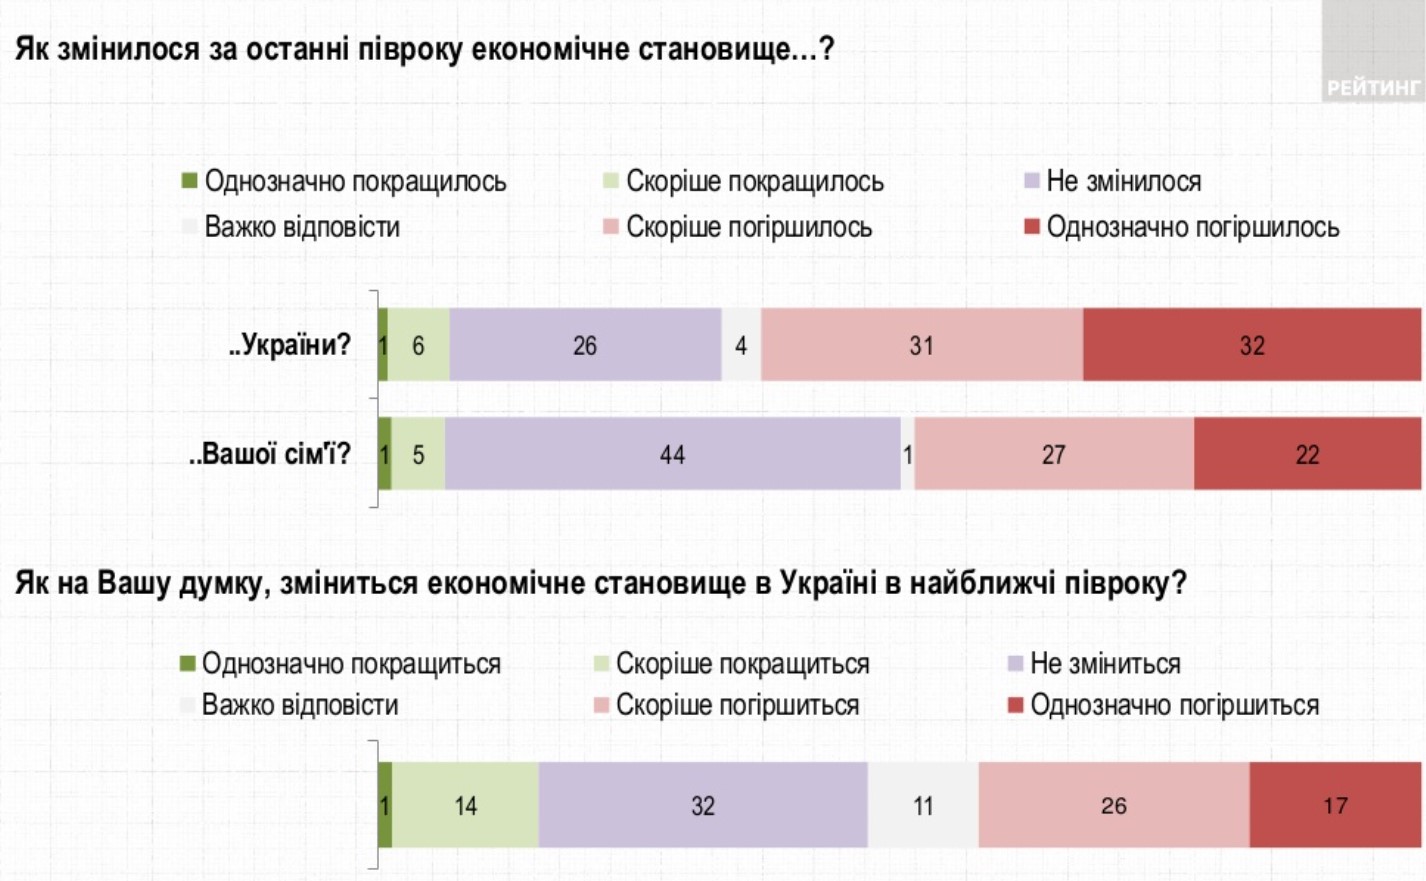 Украинцы жалуются на ситуацию в экономике. Виноватой считают власть – Рейтинг